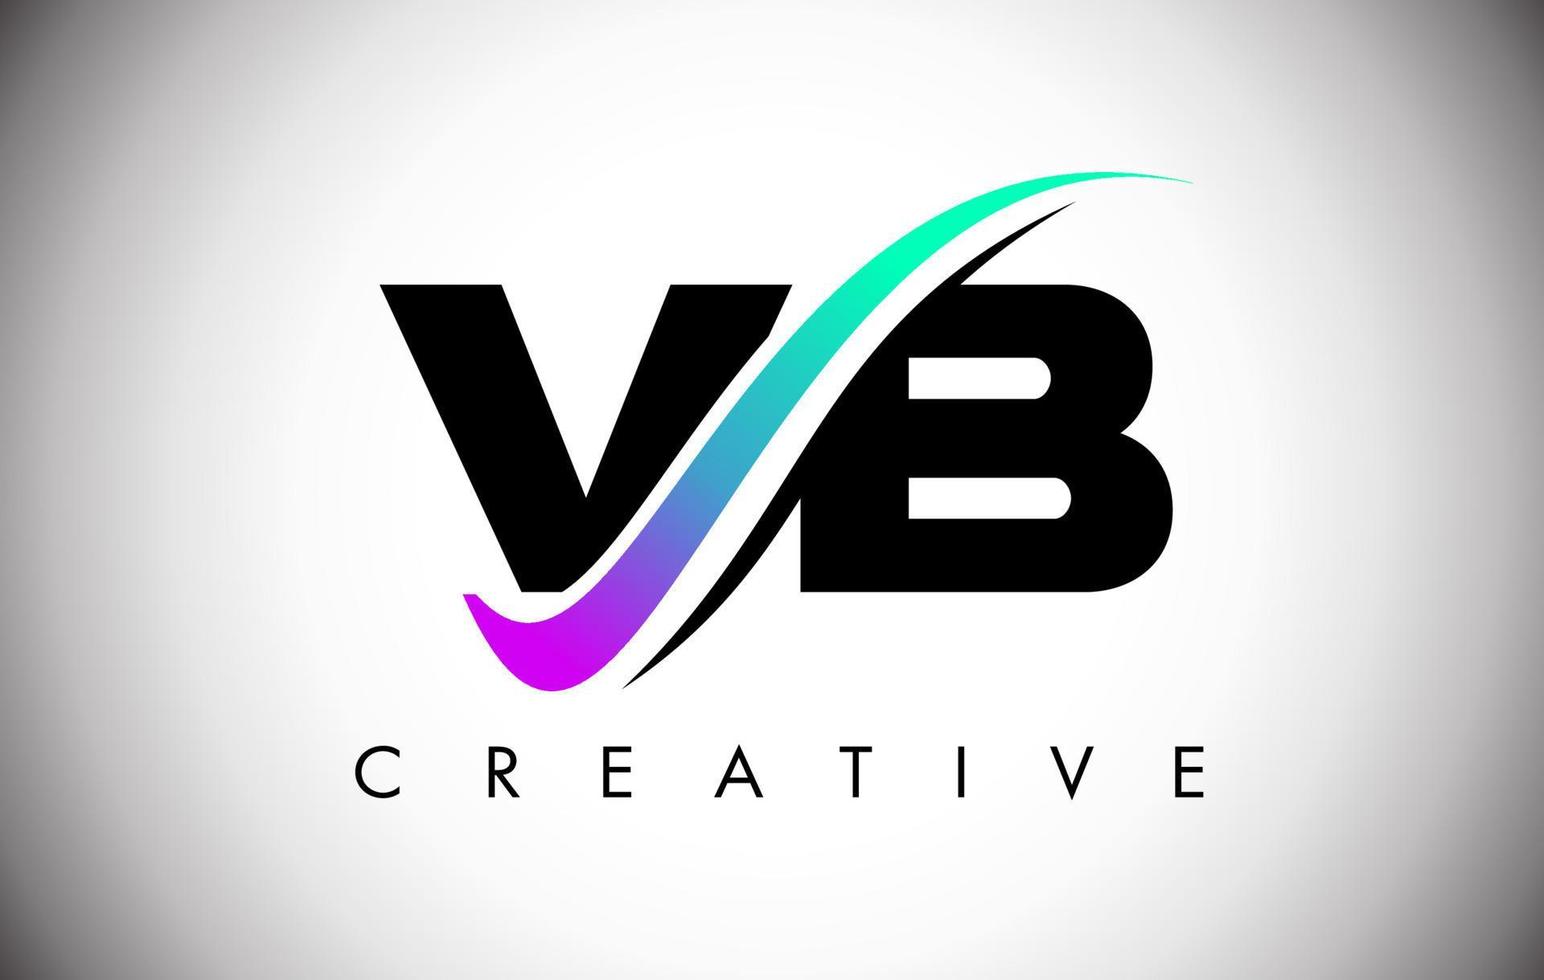 Logotipo de letra vb con línea curva swoosh creativa y fuente en negrita y colores vibrantes vector